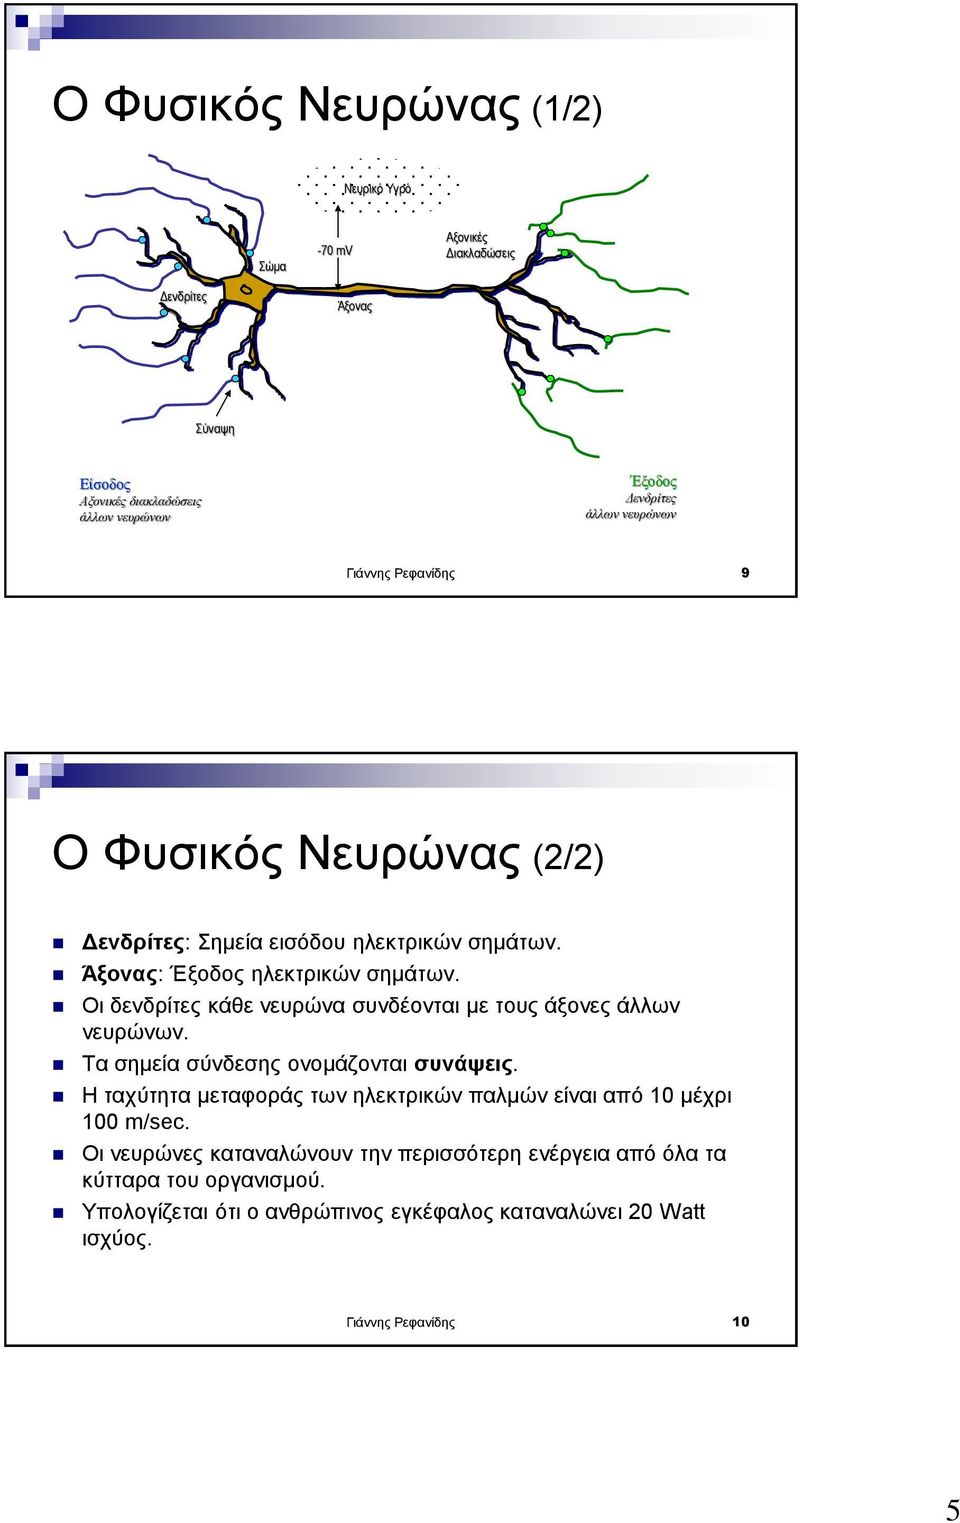 Οι δενδρίτες κάθε νευρώνα συνδέονται με τους άξονες άλλων νευρώνων. Τα σημεία σύνδεσης ονομάζονται συνάψεις.